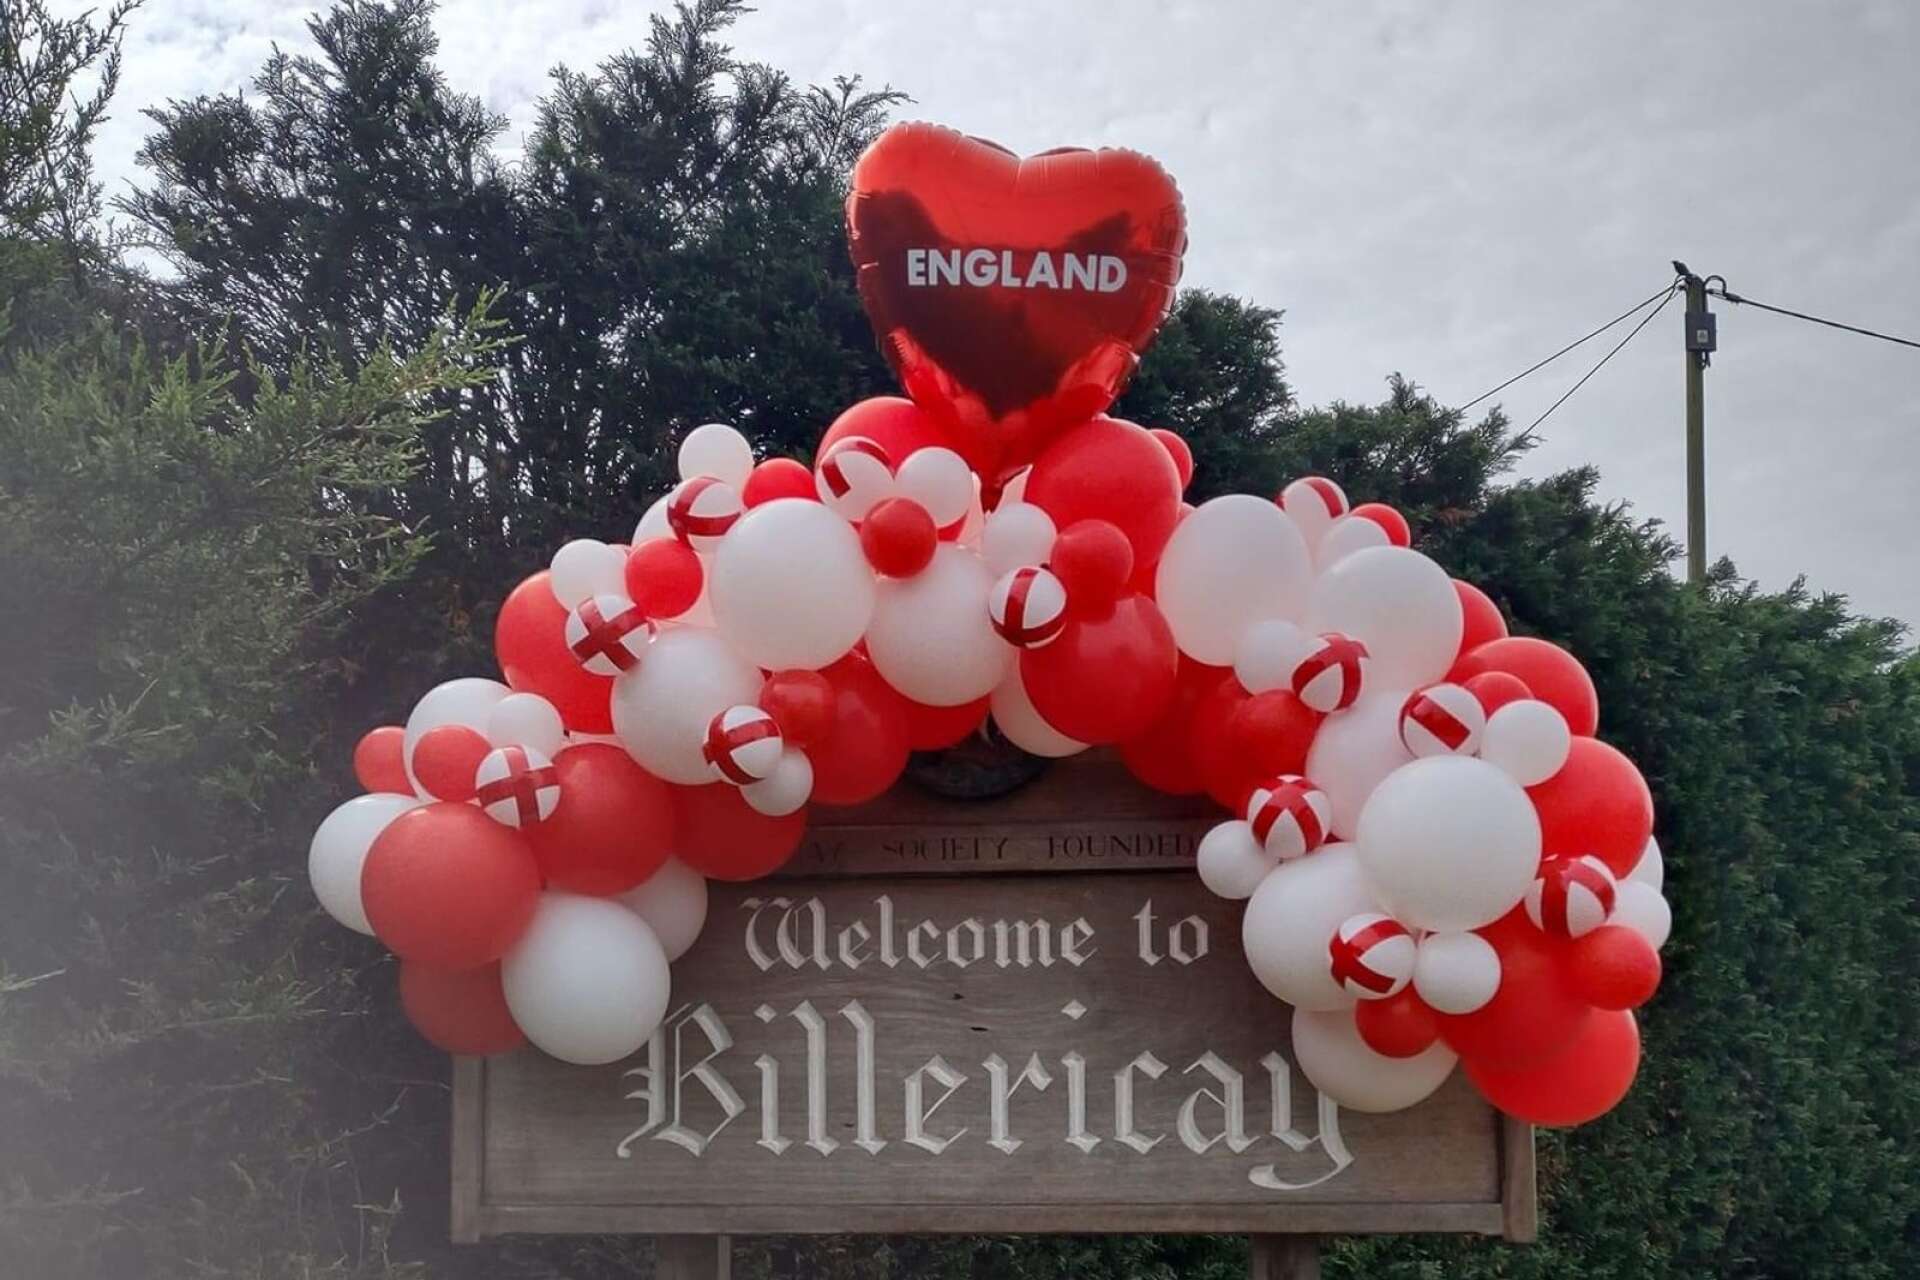 Hela Billericay och England tlever efter devisen ”football is coming home”.